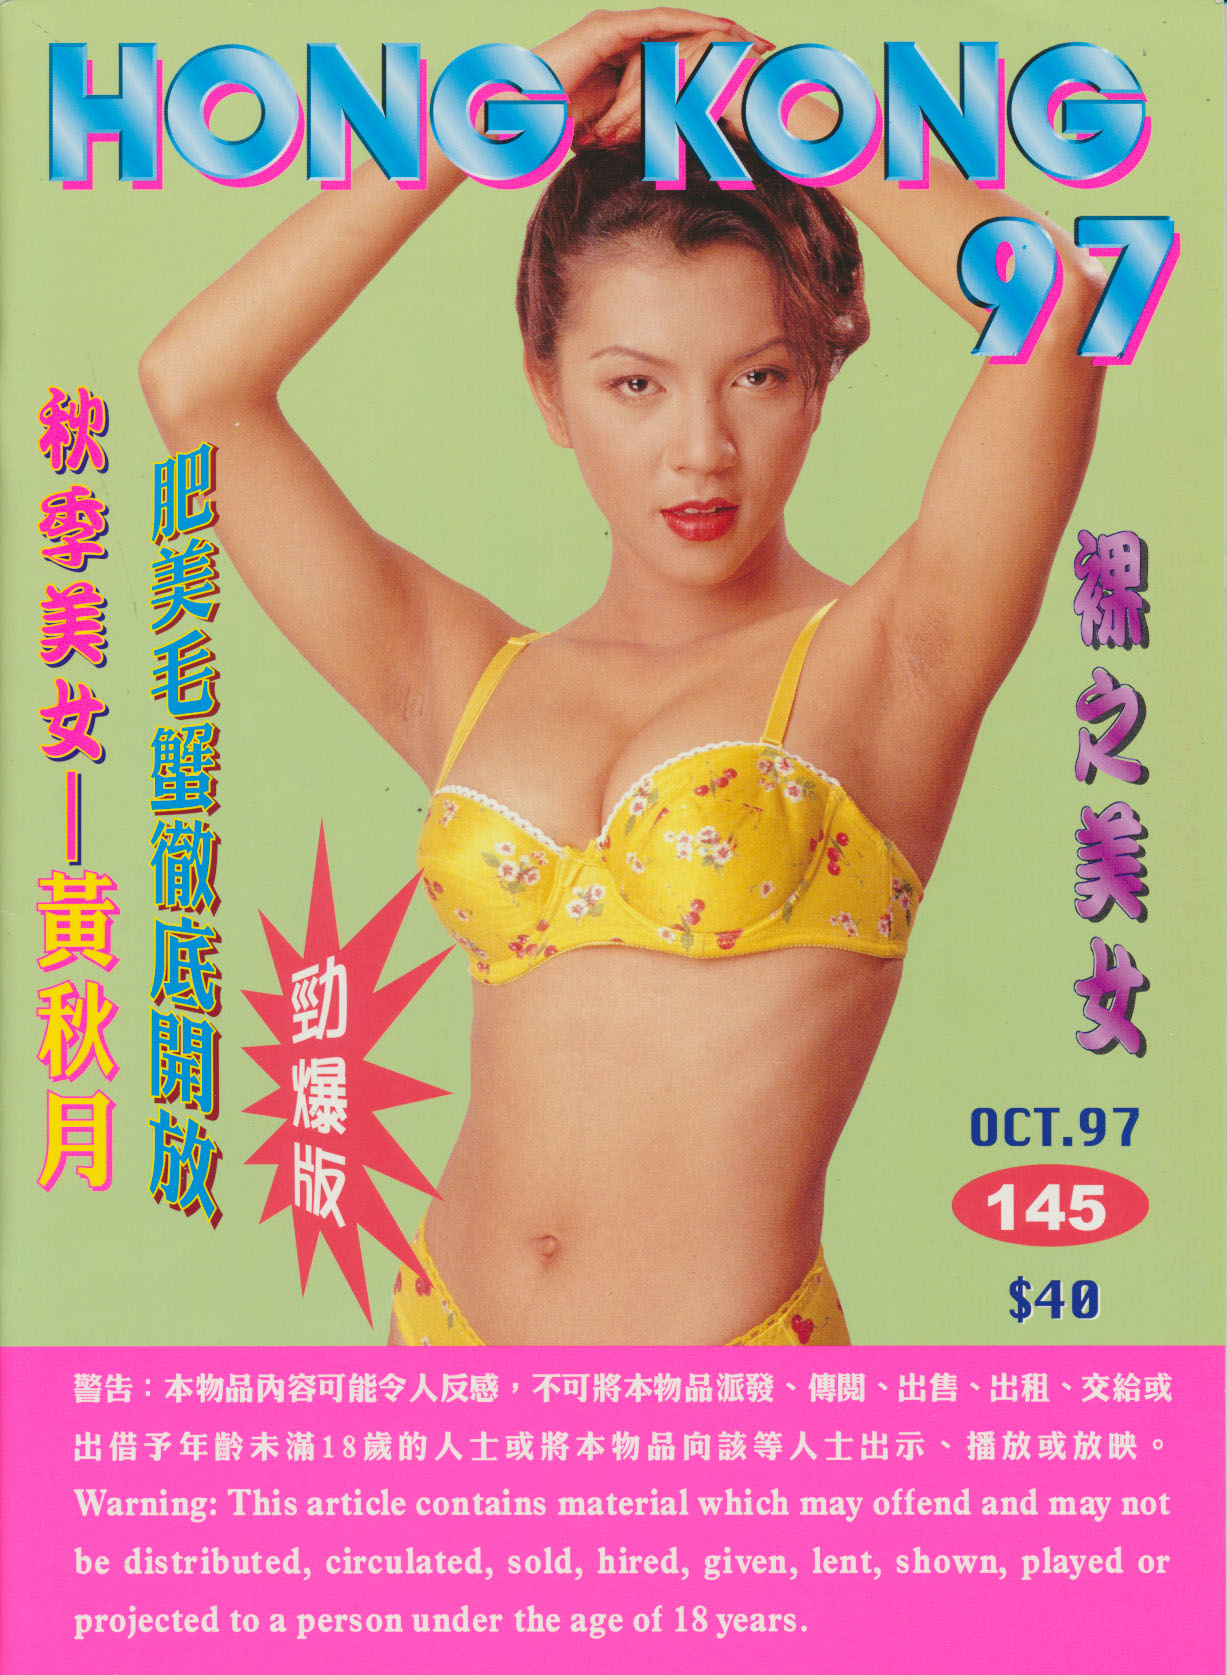 Hong Kong 97 # 145, October 1997 magazine back issue Hong Kong 97 magizine back copy 